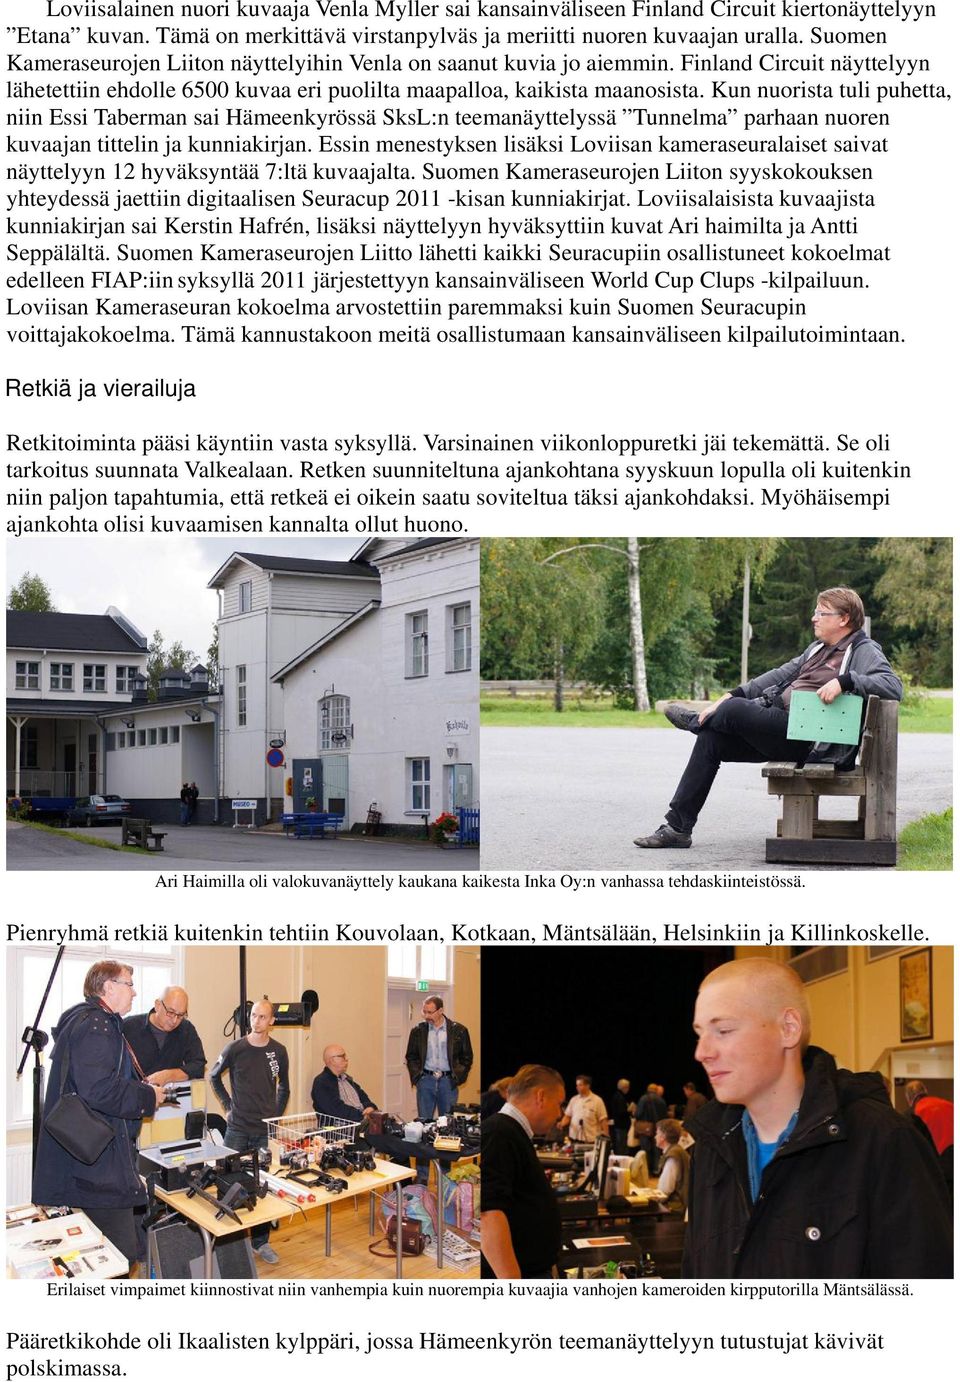 Kun nuorista tuli puhetta, niin Essi Taberman sai Hämeenkyrössä SksL:n teemanäyttelyssä Tunnelma parhaan nuoren kuvaajan tittelin ja kunniakirjan.